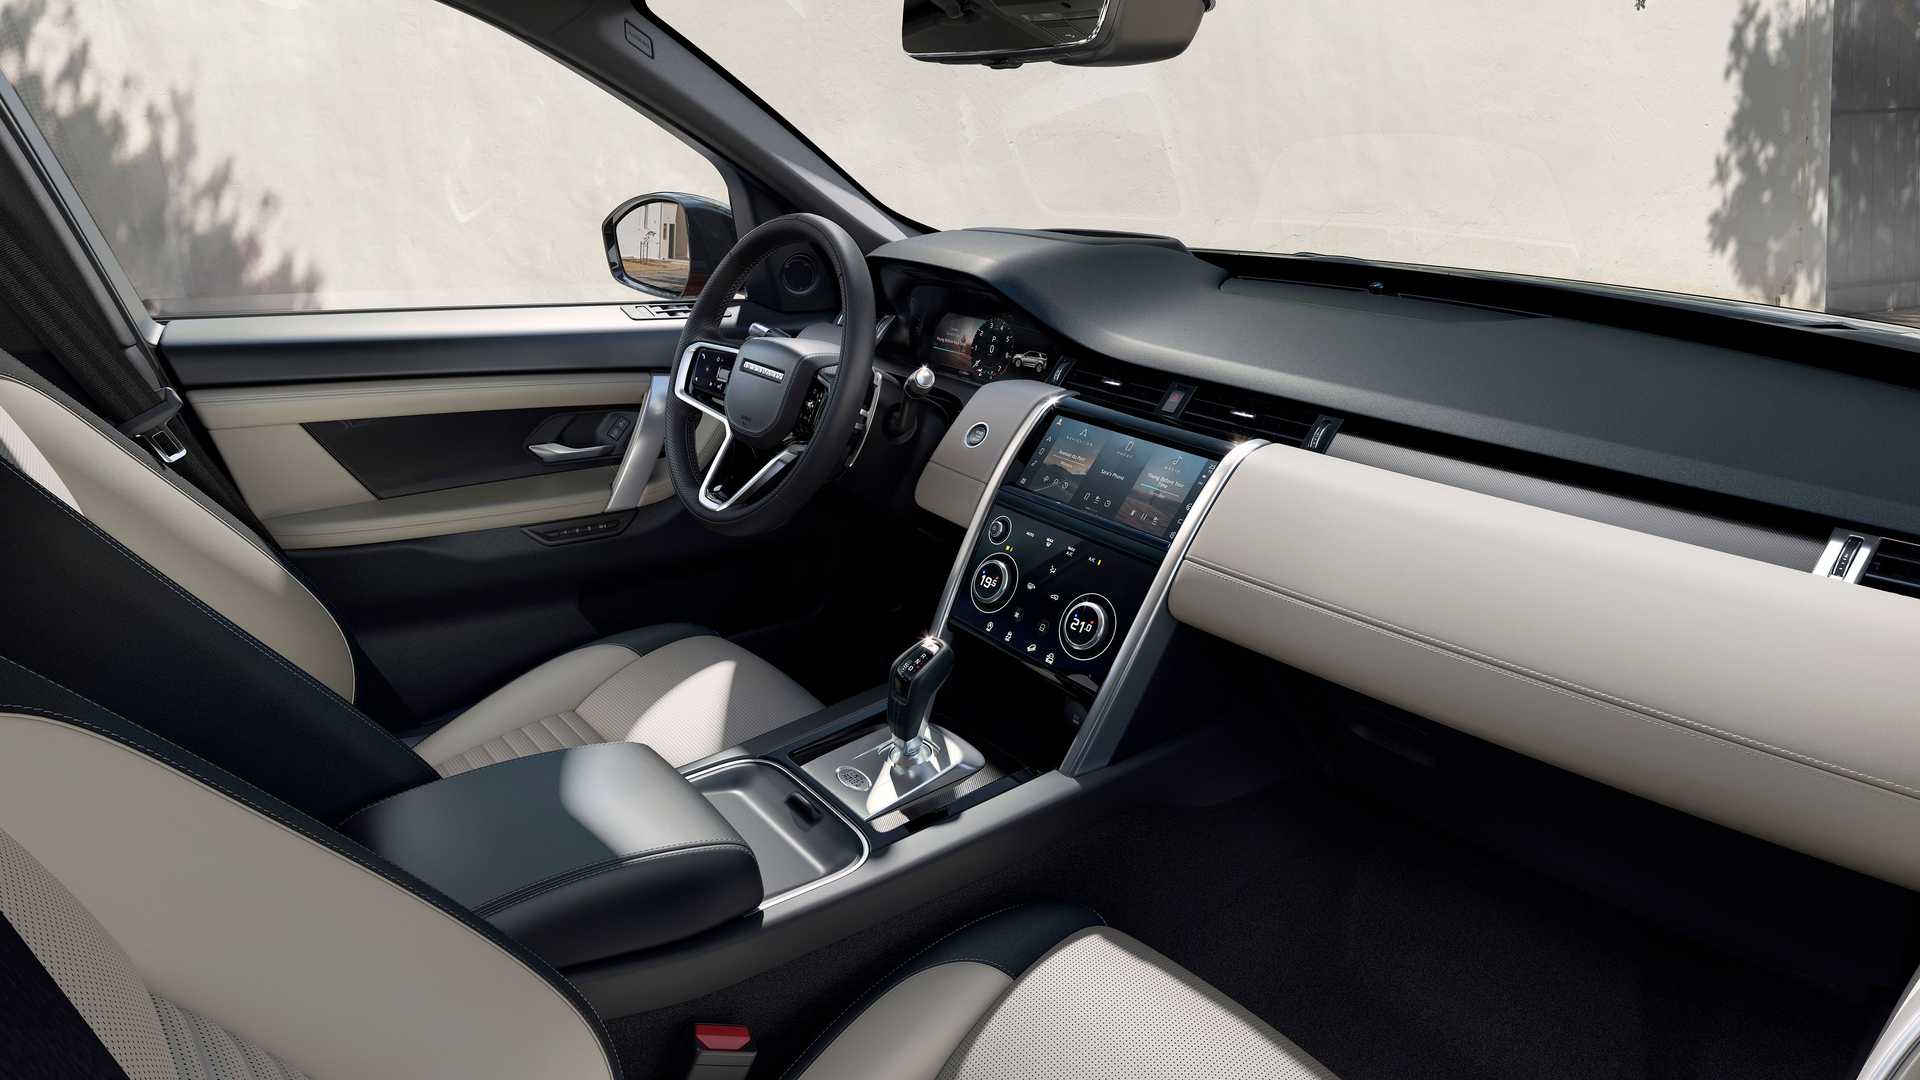 Range Rover đời mới lần đầu lộ nội thất: Thêm màn hình lớn, nhiều chi tiết  giống Discovery facelift